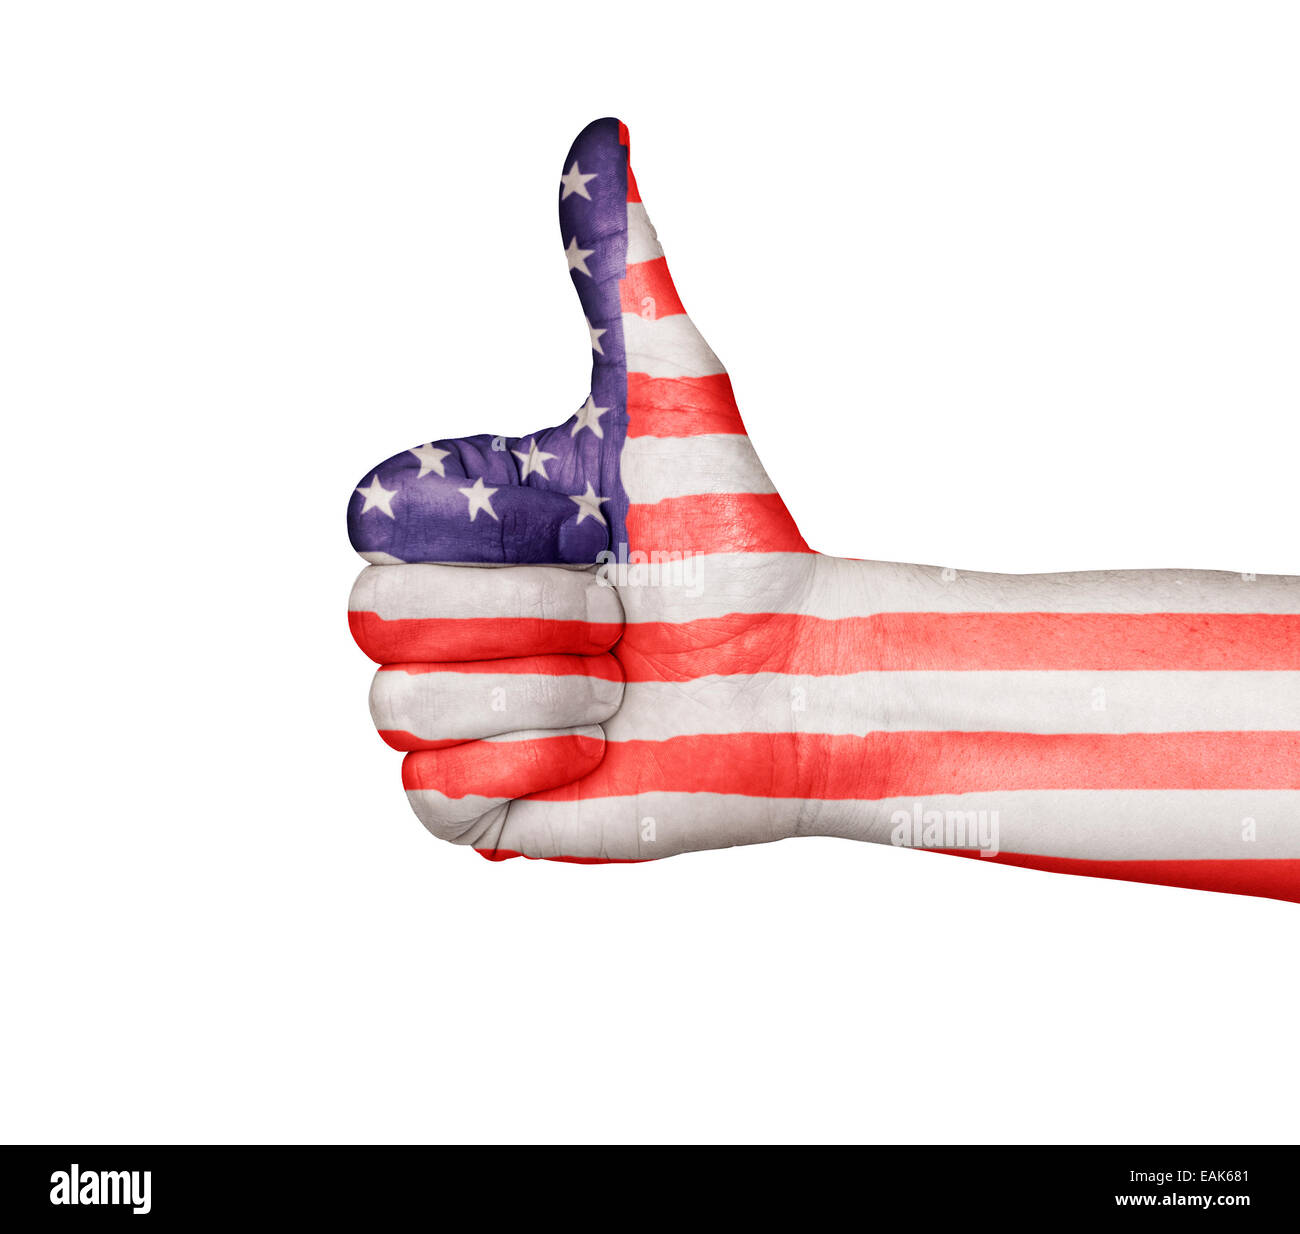 Maschio lato dando un pollice su approvazione, dipinto con la bandiera degli Stati Uniti, le stelle e strisce. Isolato su uno sfondo bianco con cli Foto Stock